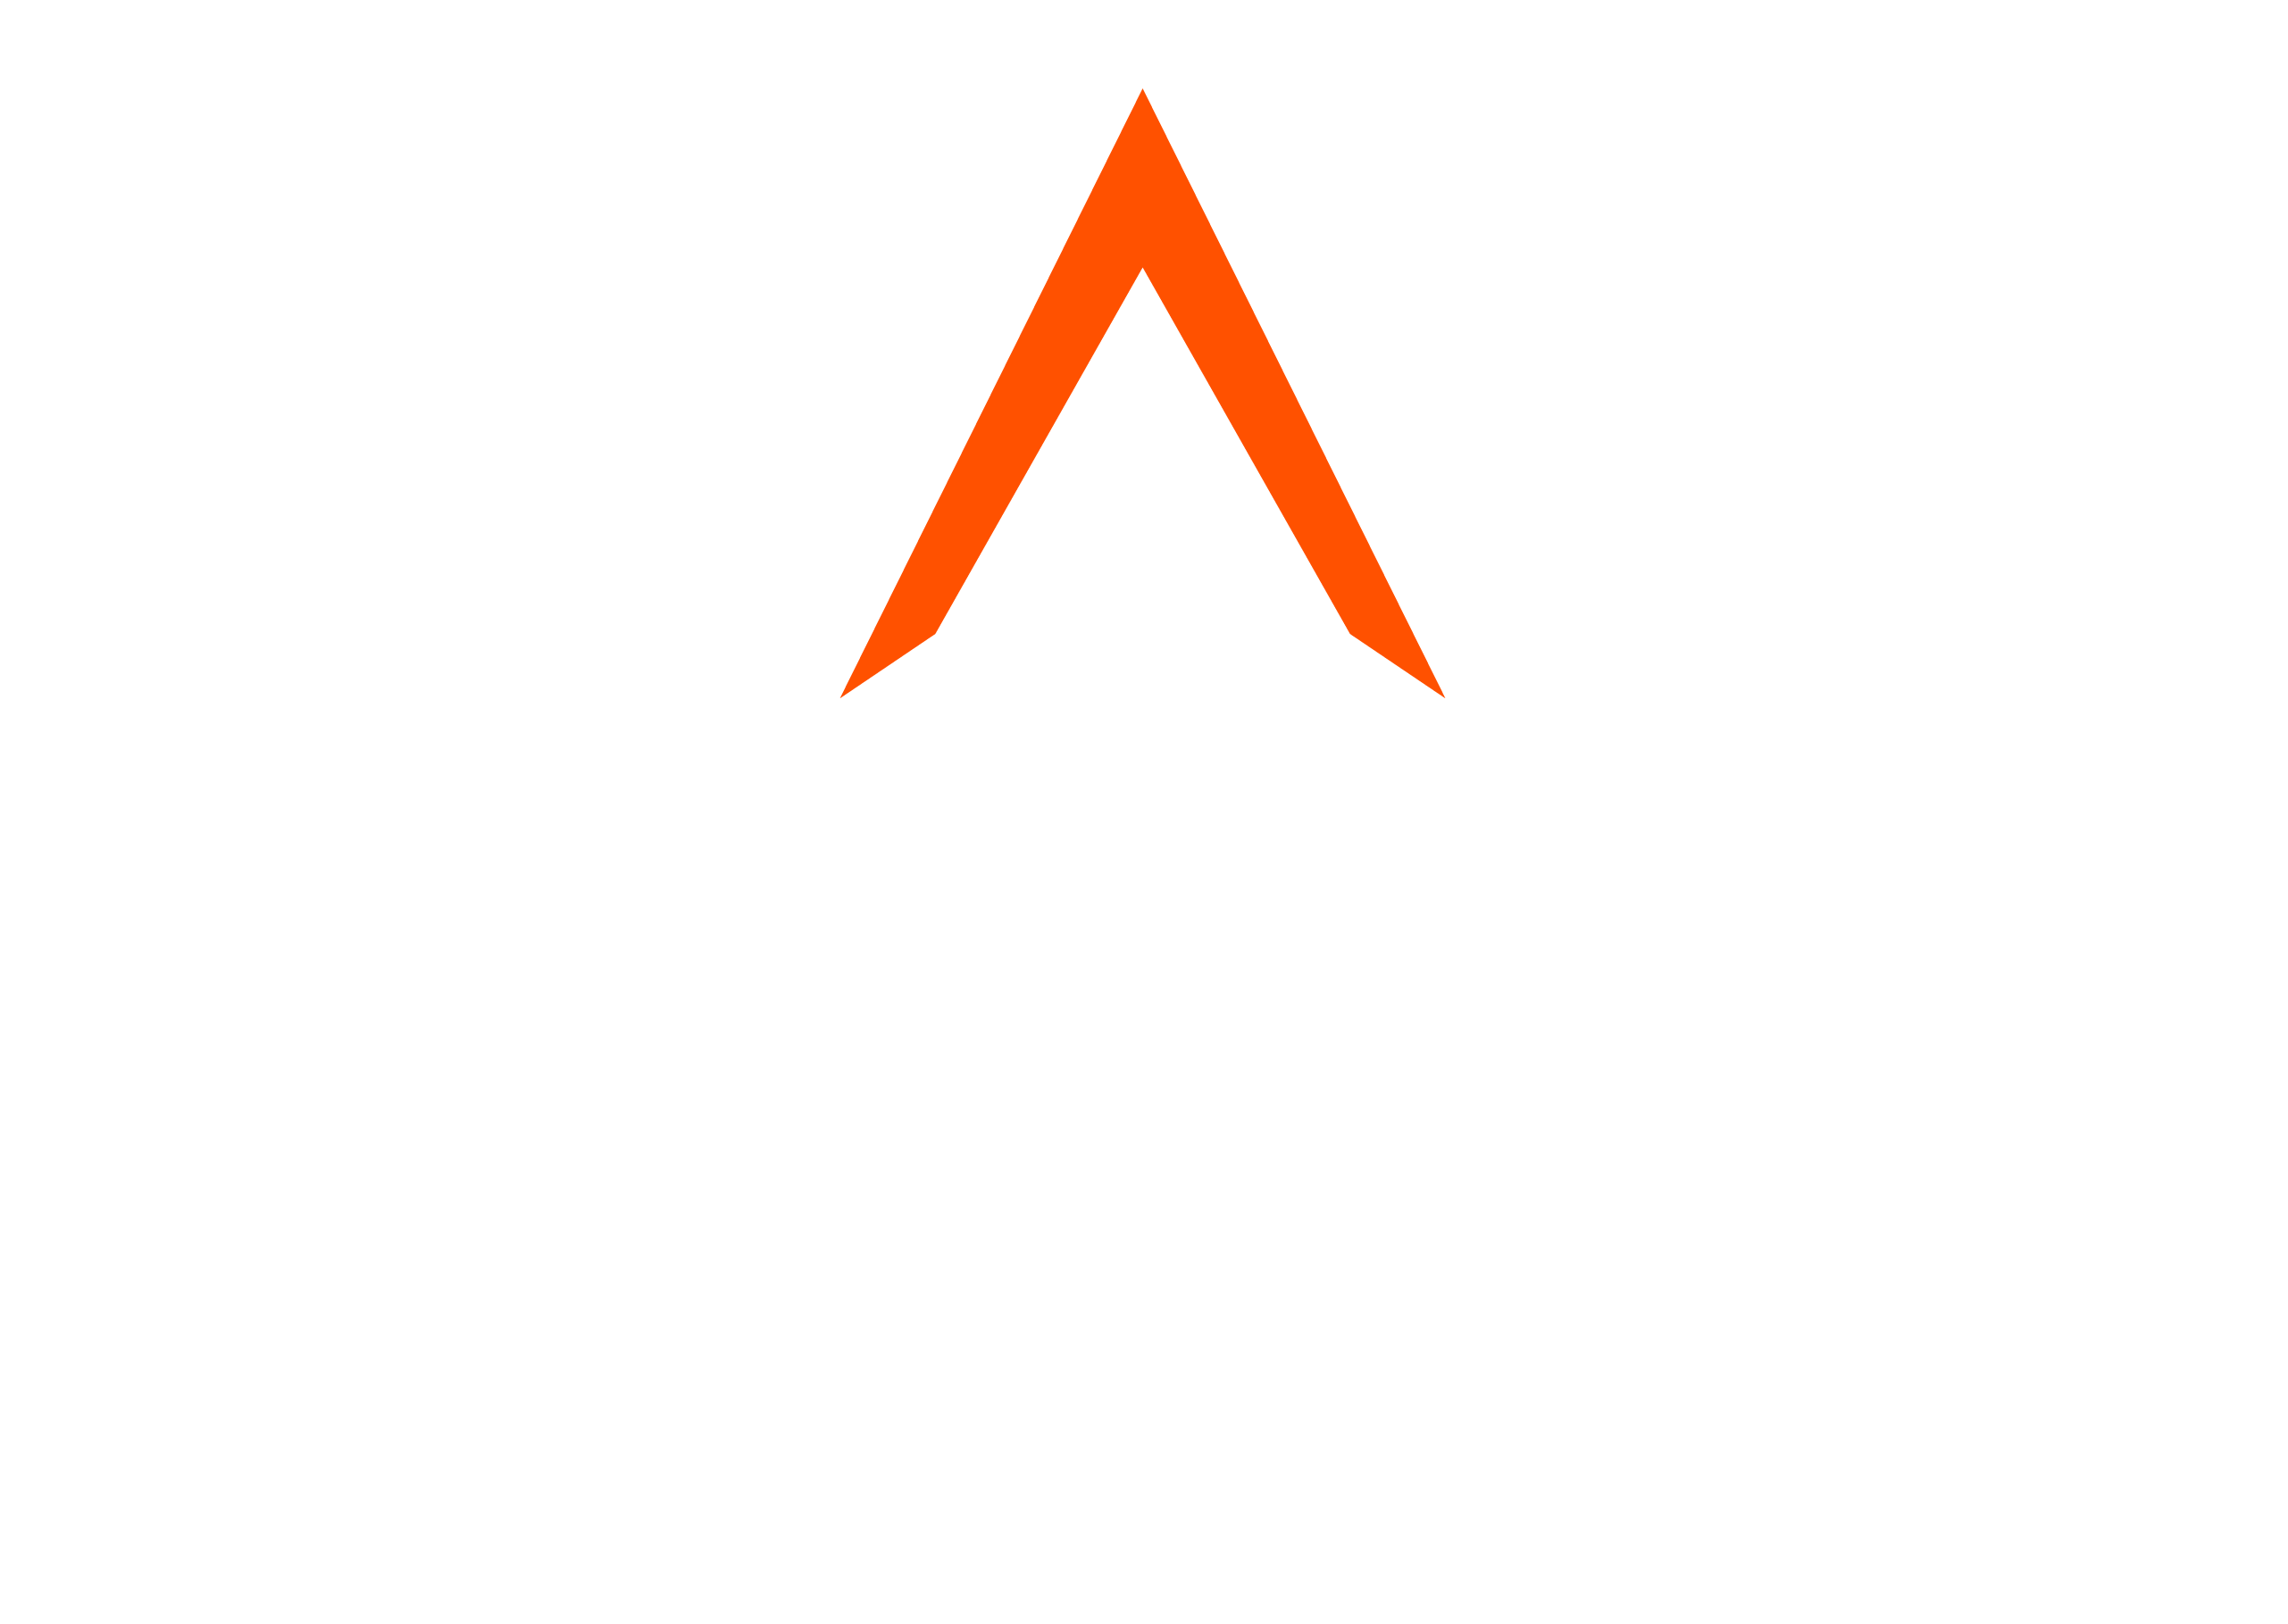 Malta Dynamics